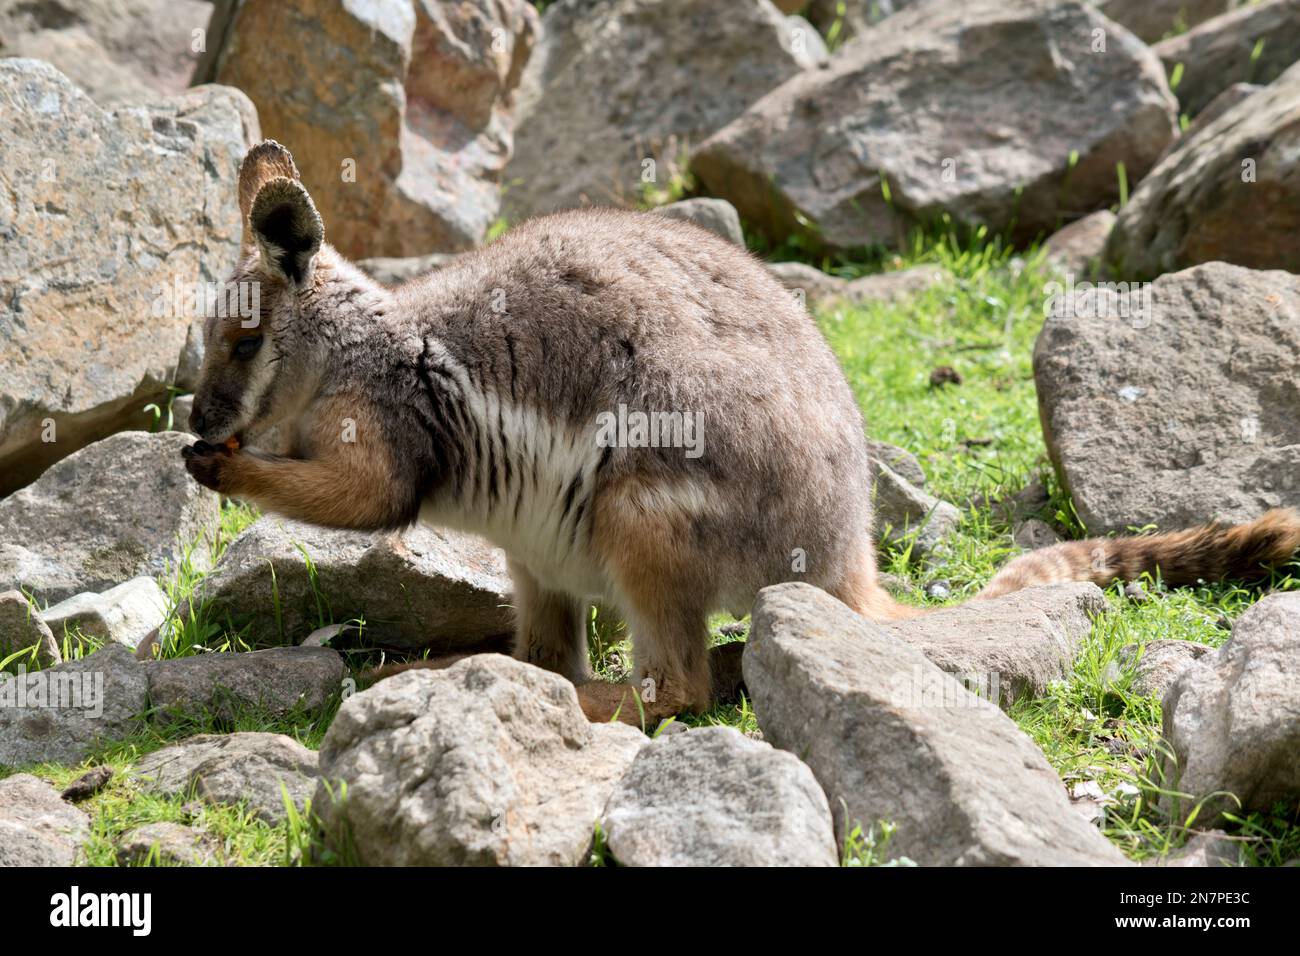 c'est un jeune wallaby de roche à pied jaune qui mange une carotte Banque D'Images